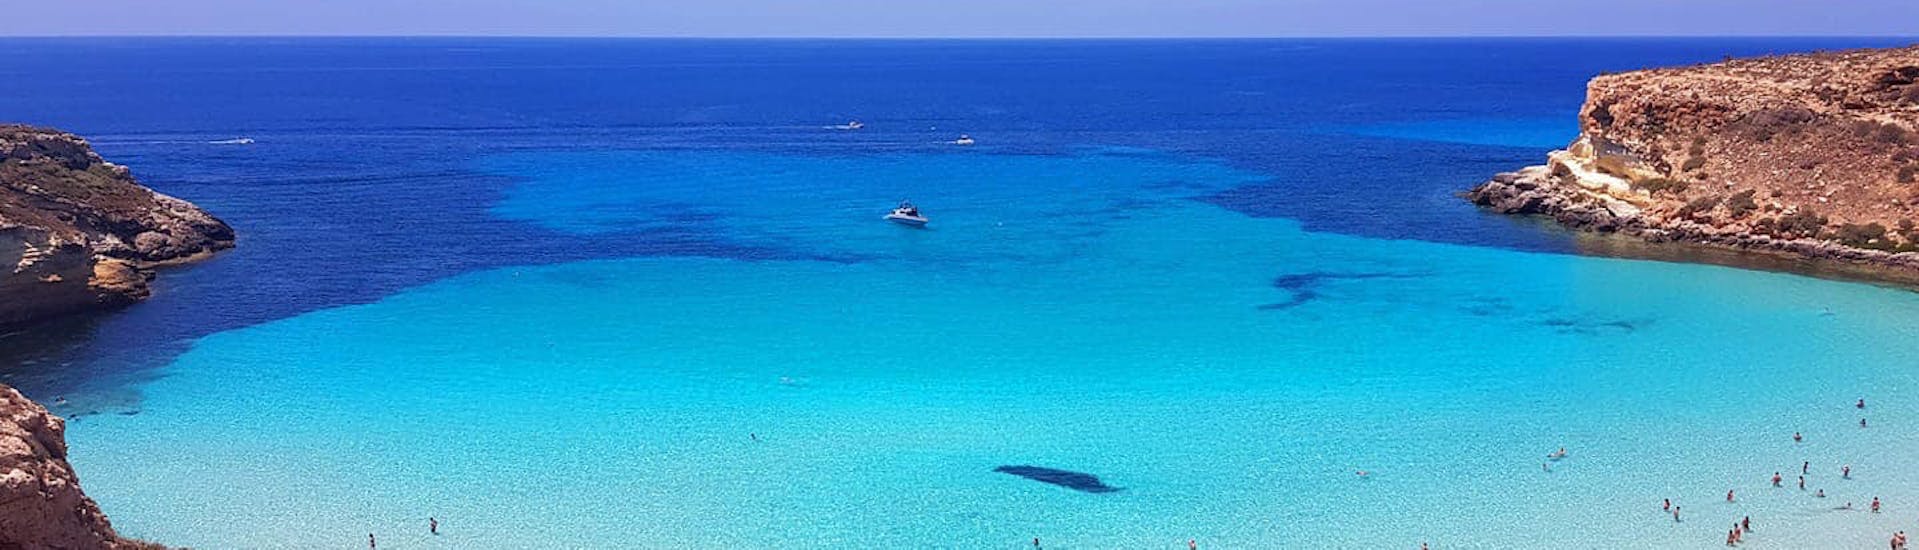 Een van de adembenemende stranden die we zullen bezoeken tijdens onze privé-boottocht rond Lampedusa met lunch met Gita in Barca Liliana Lampedusa.